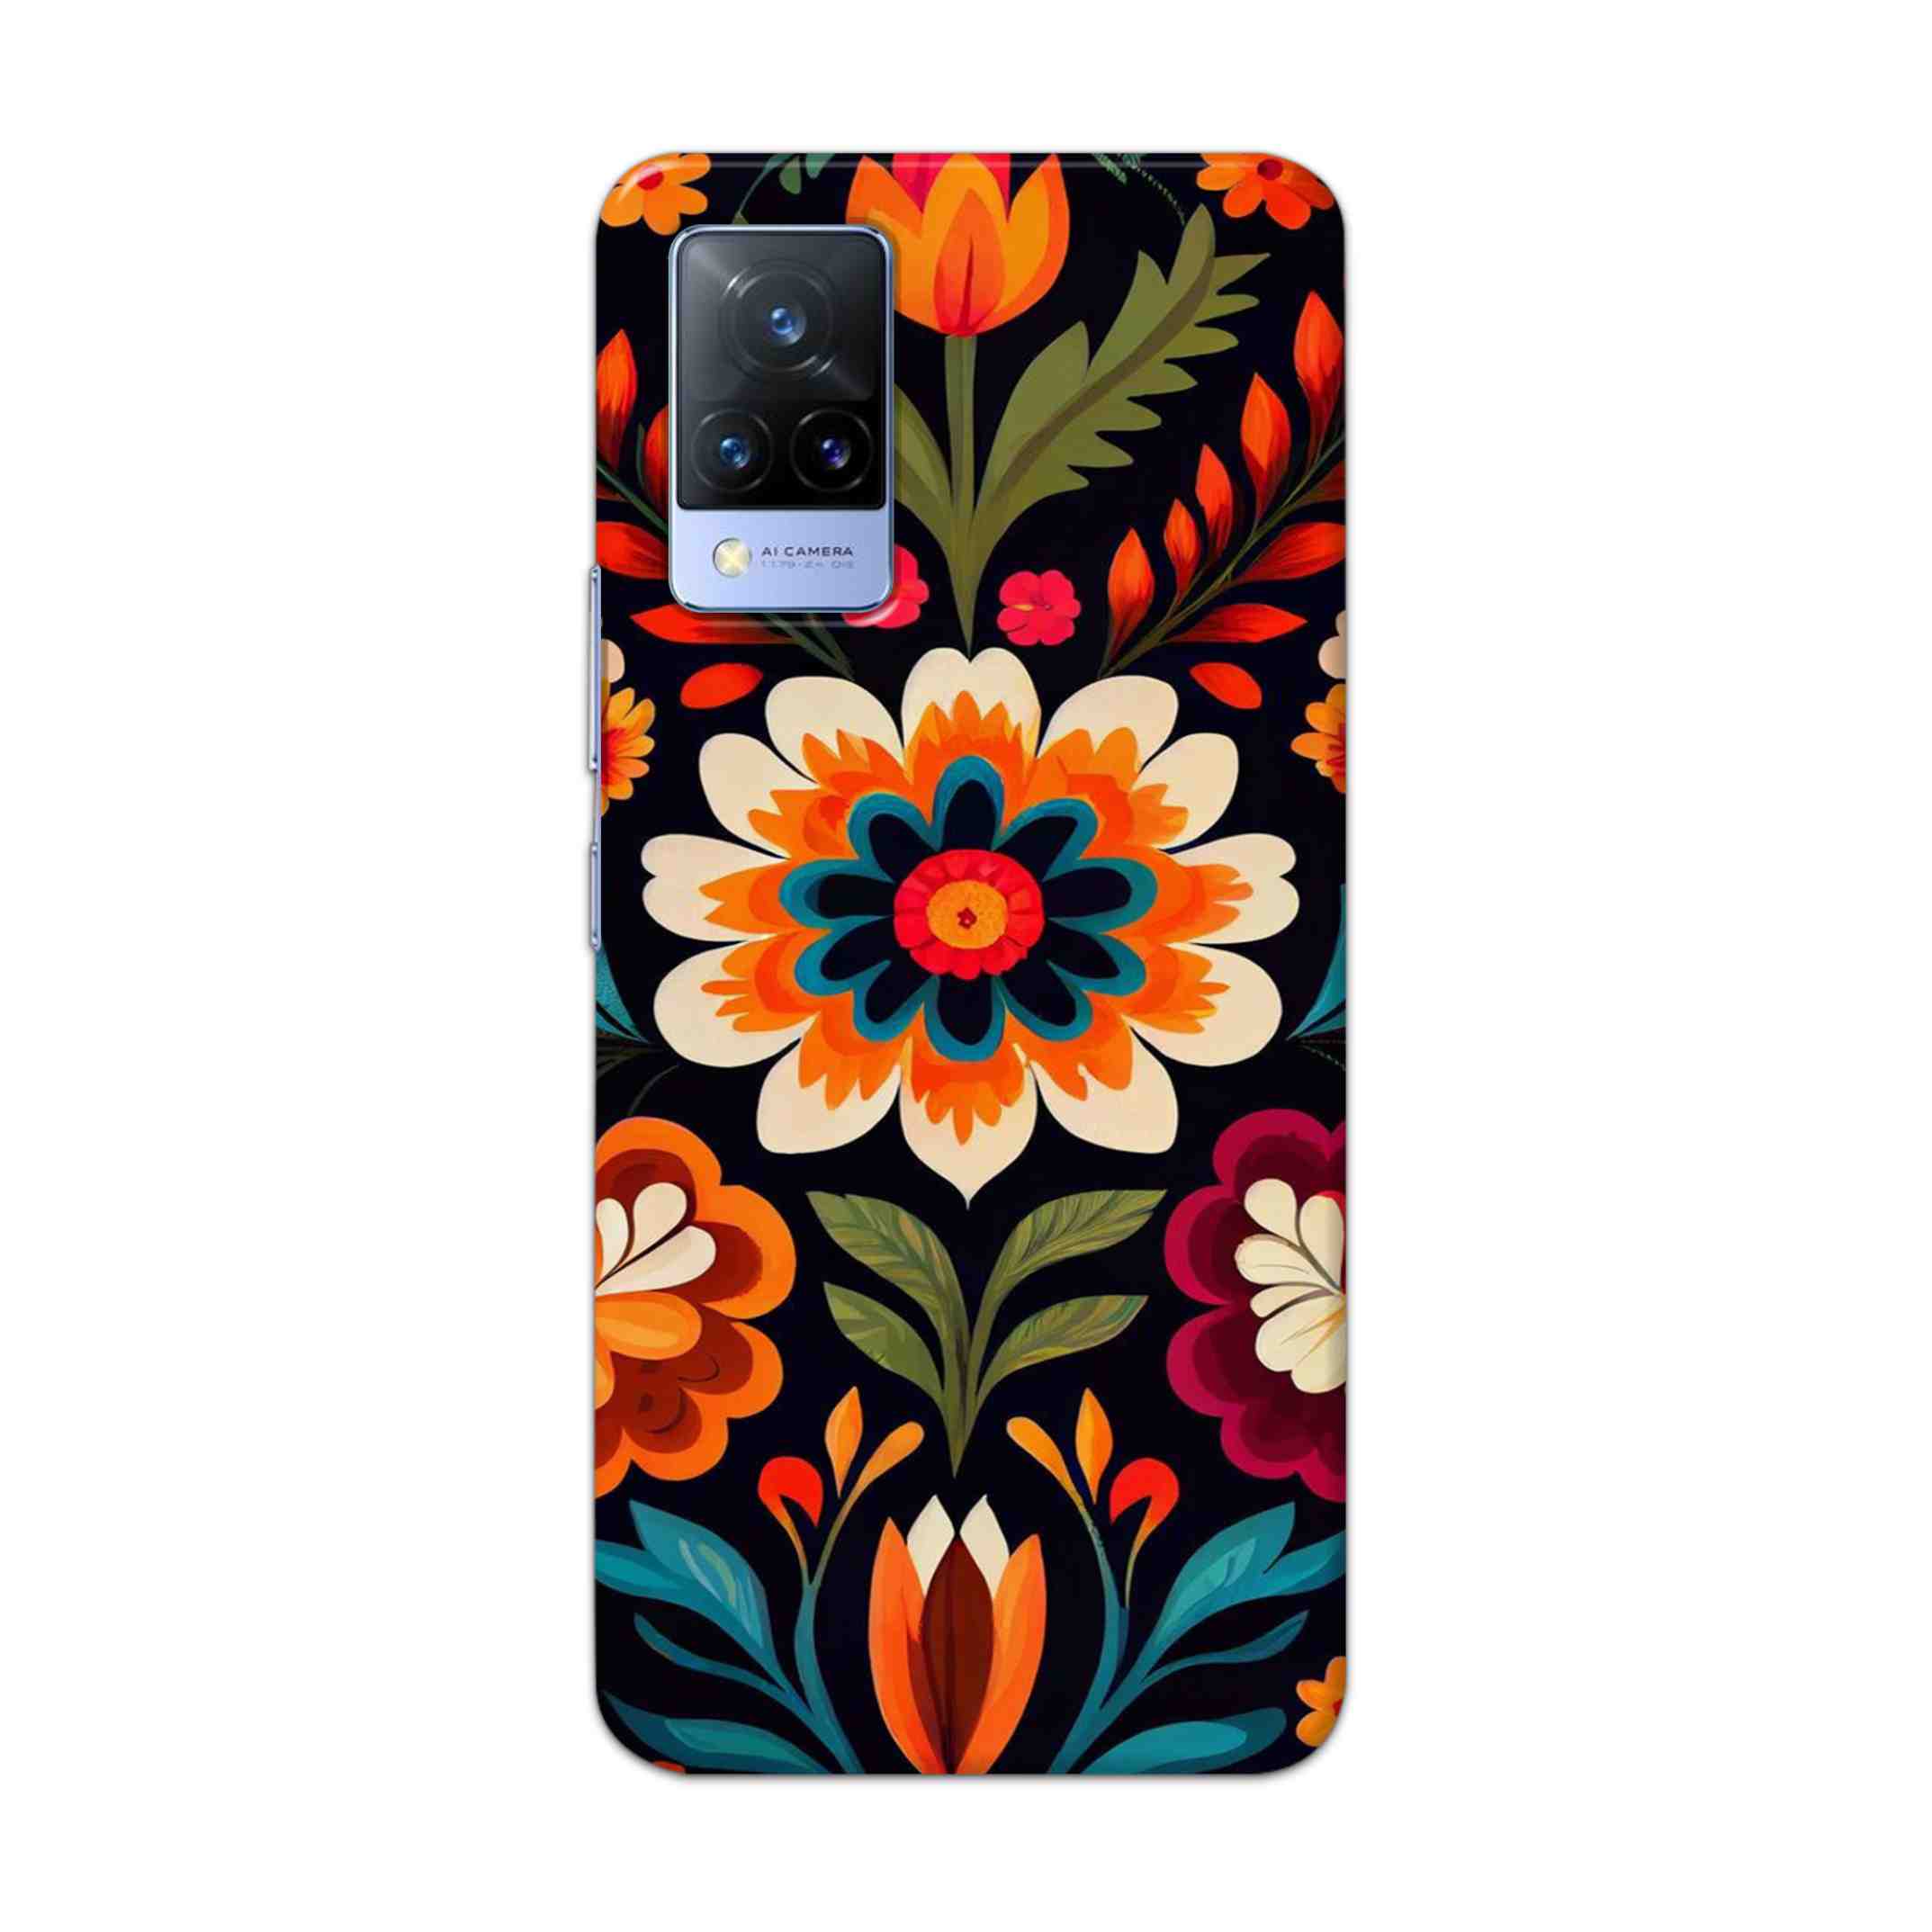 Buy Flower Hard Back Mobile Phone Case Cover For Vivo V21 Online